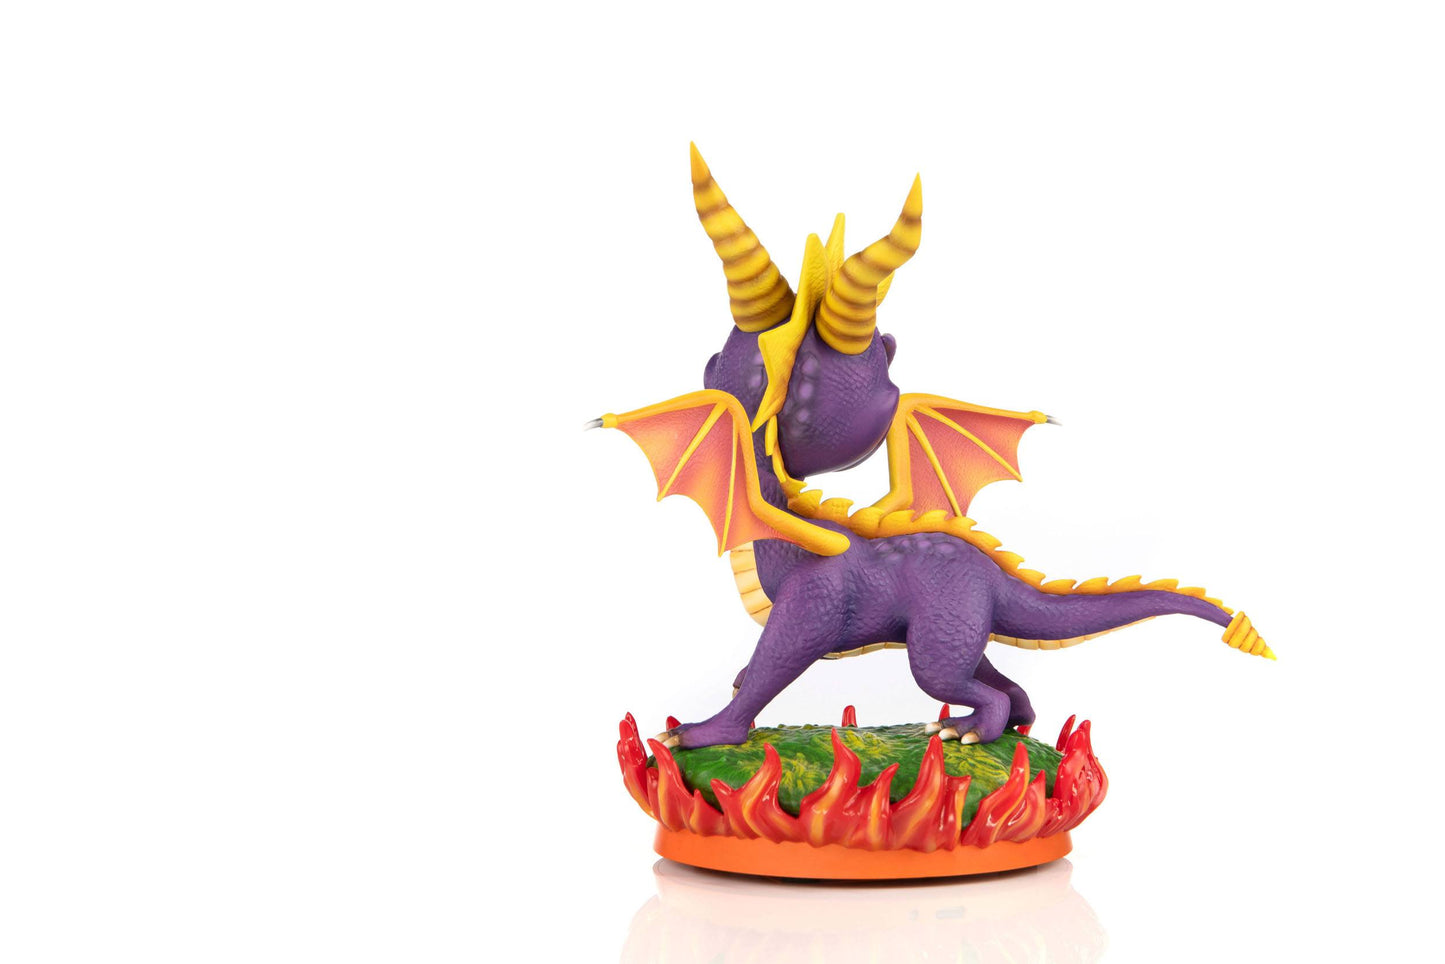 Statuette Spyro the Dragon